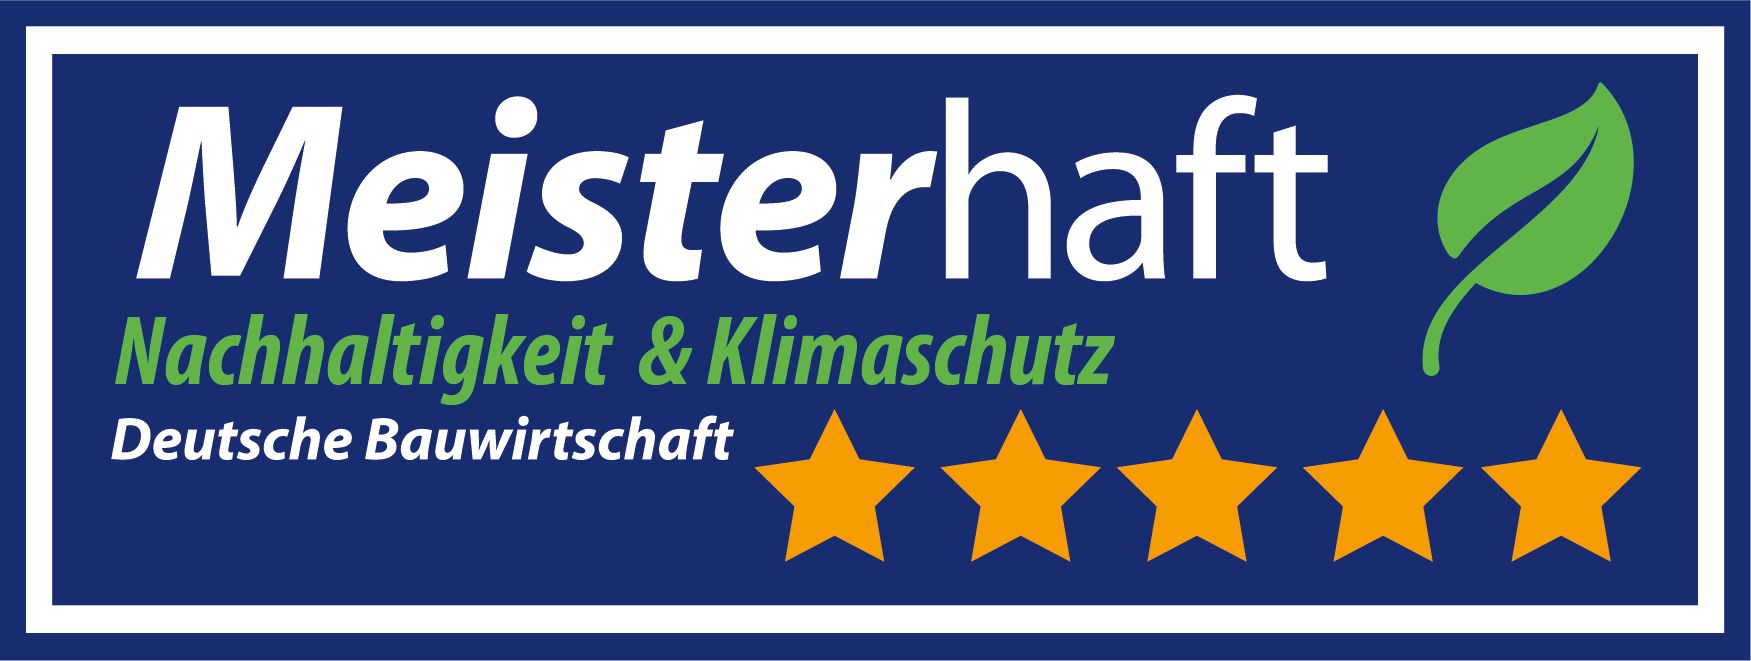 Logo - Meisterhaft 5 Sterne